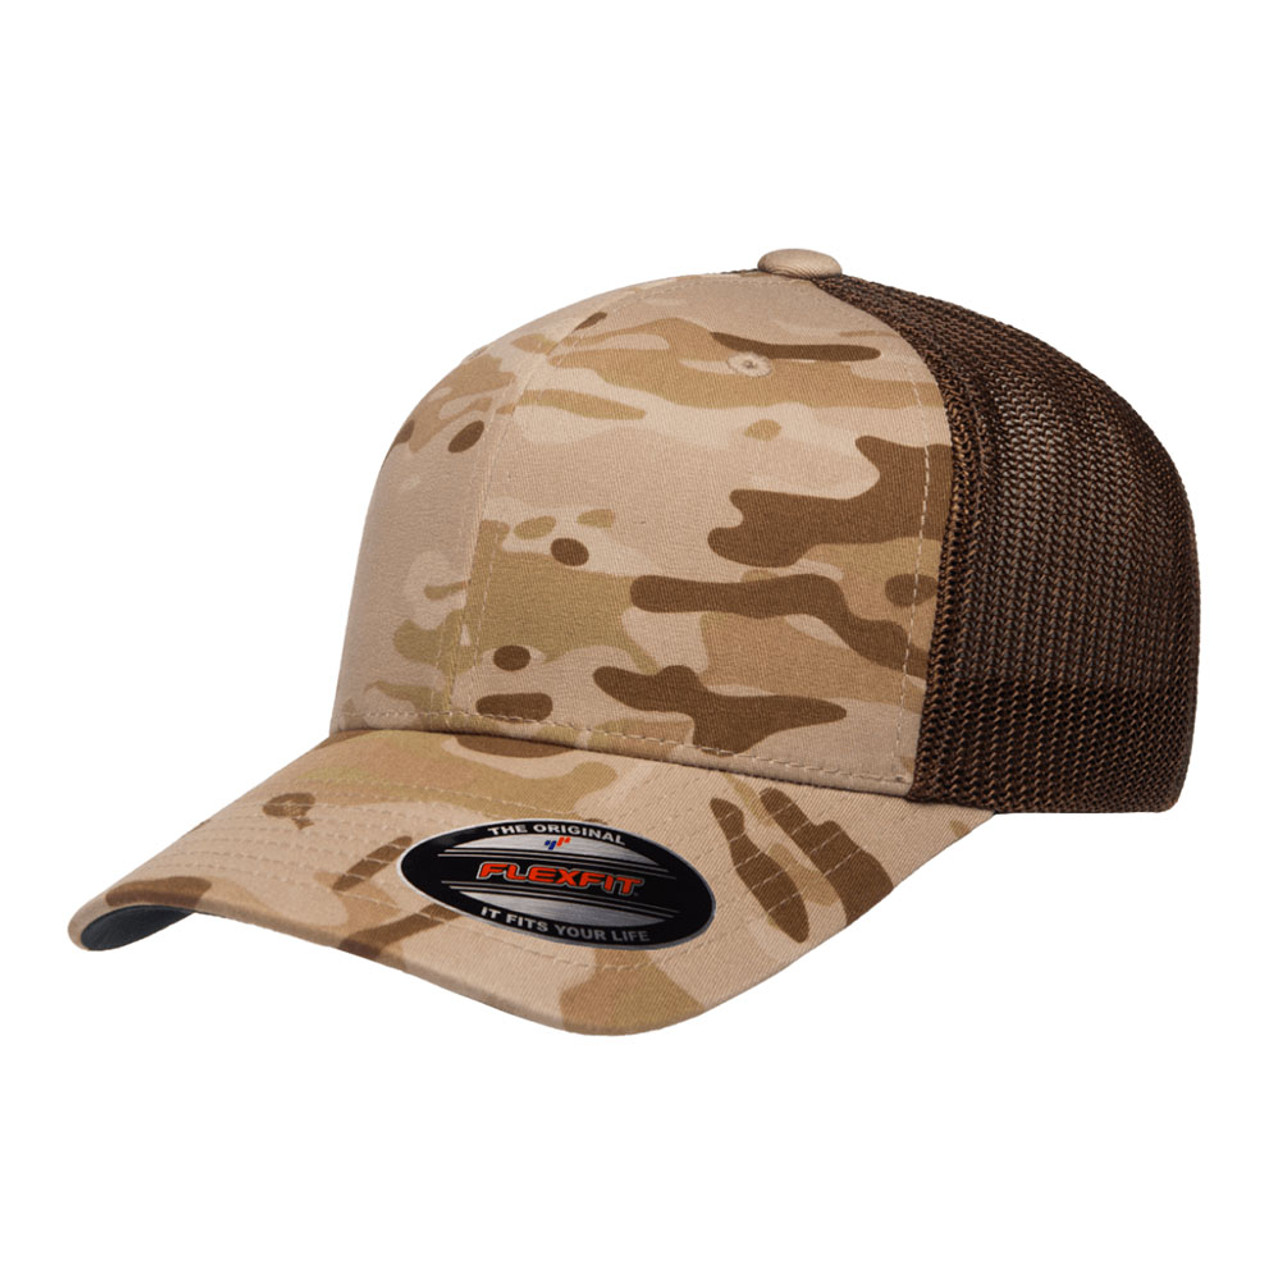 Flexfit Multicam Trucker Mesh Cap - One Dozen | The Jac Hat